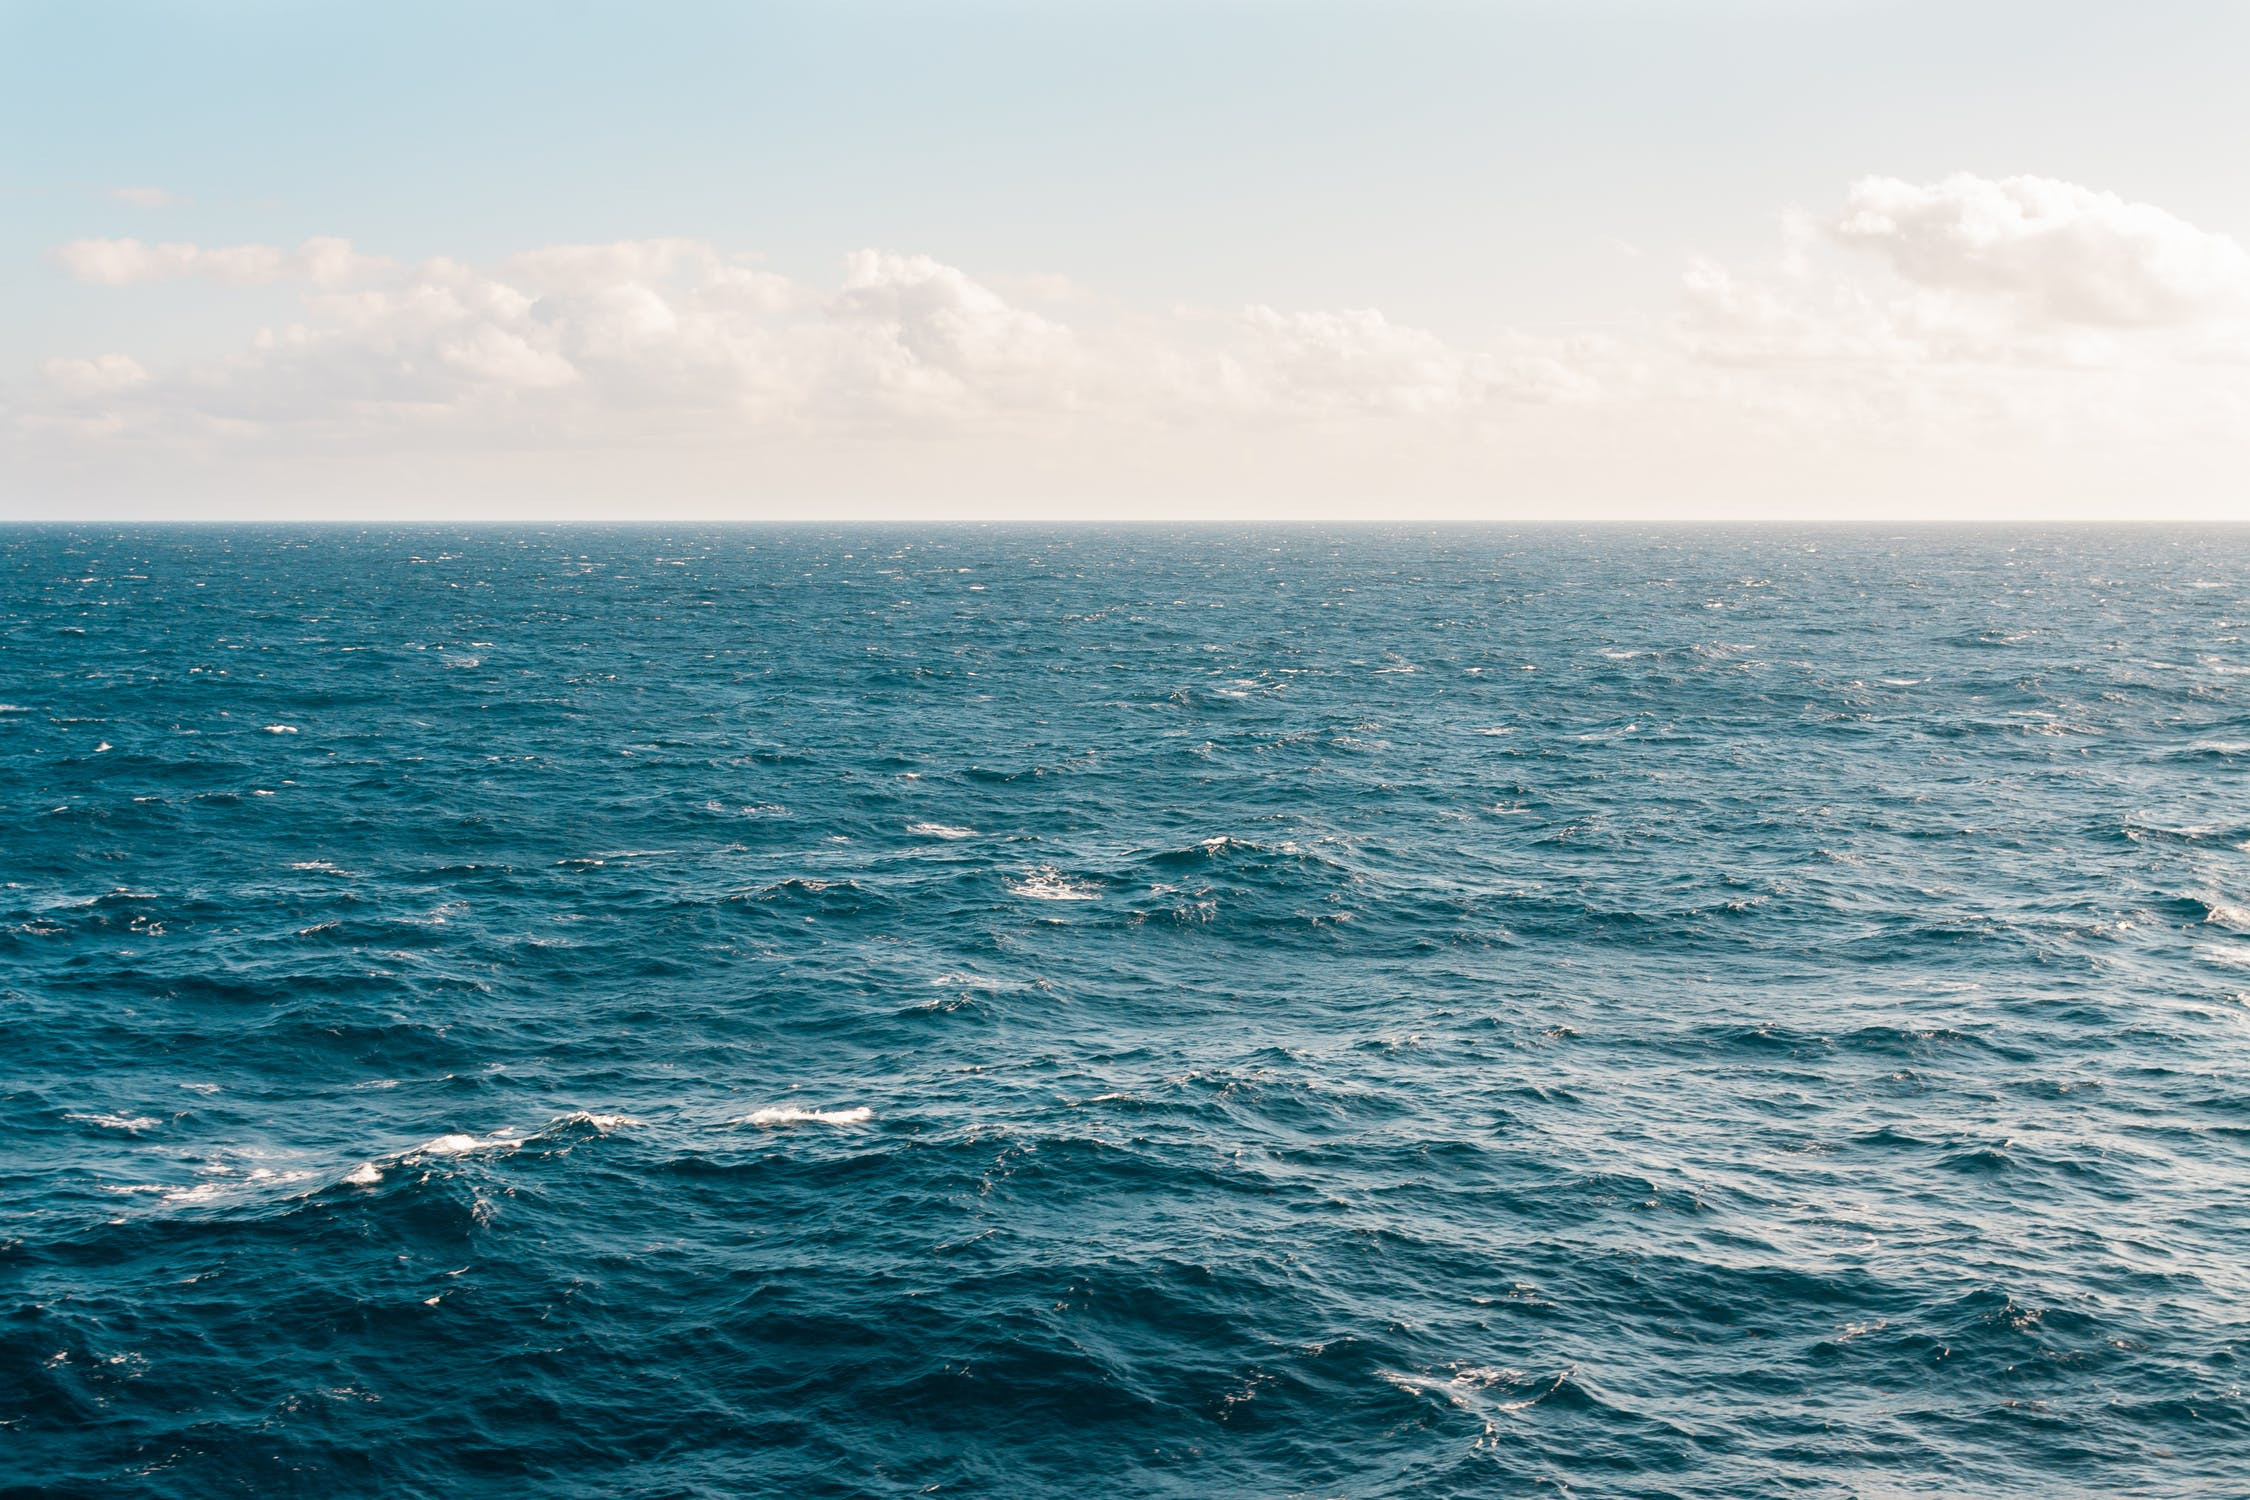 Αγγελόπουλος: «Δώστε μου ένα μέρος να κοιτάω. Ξεχάστε με στη θάλασσα»